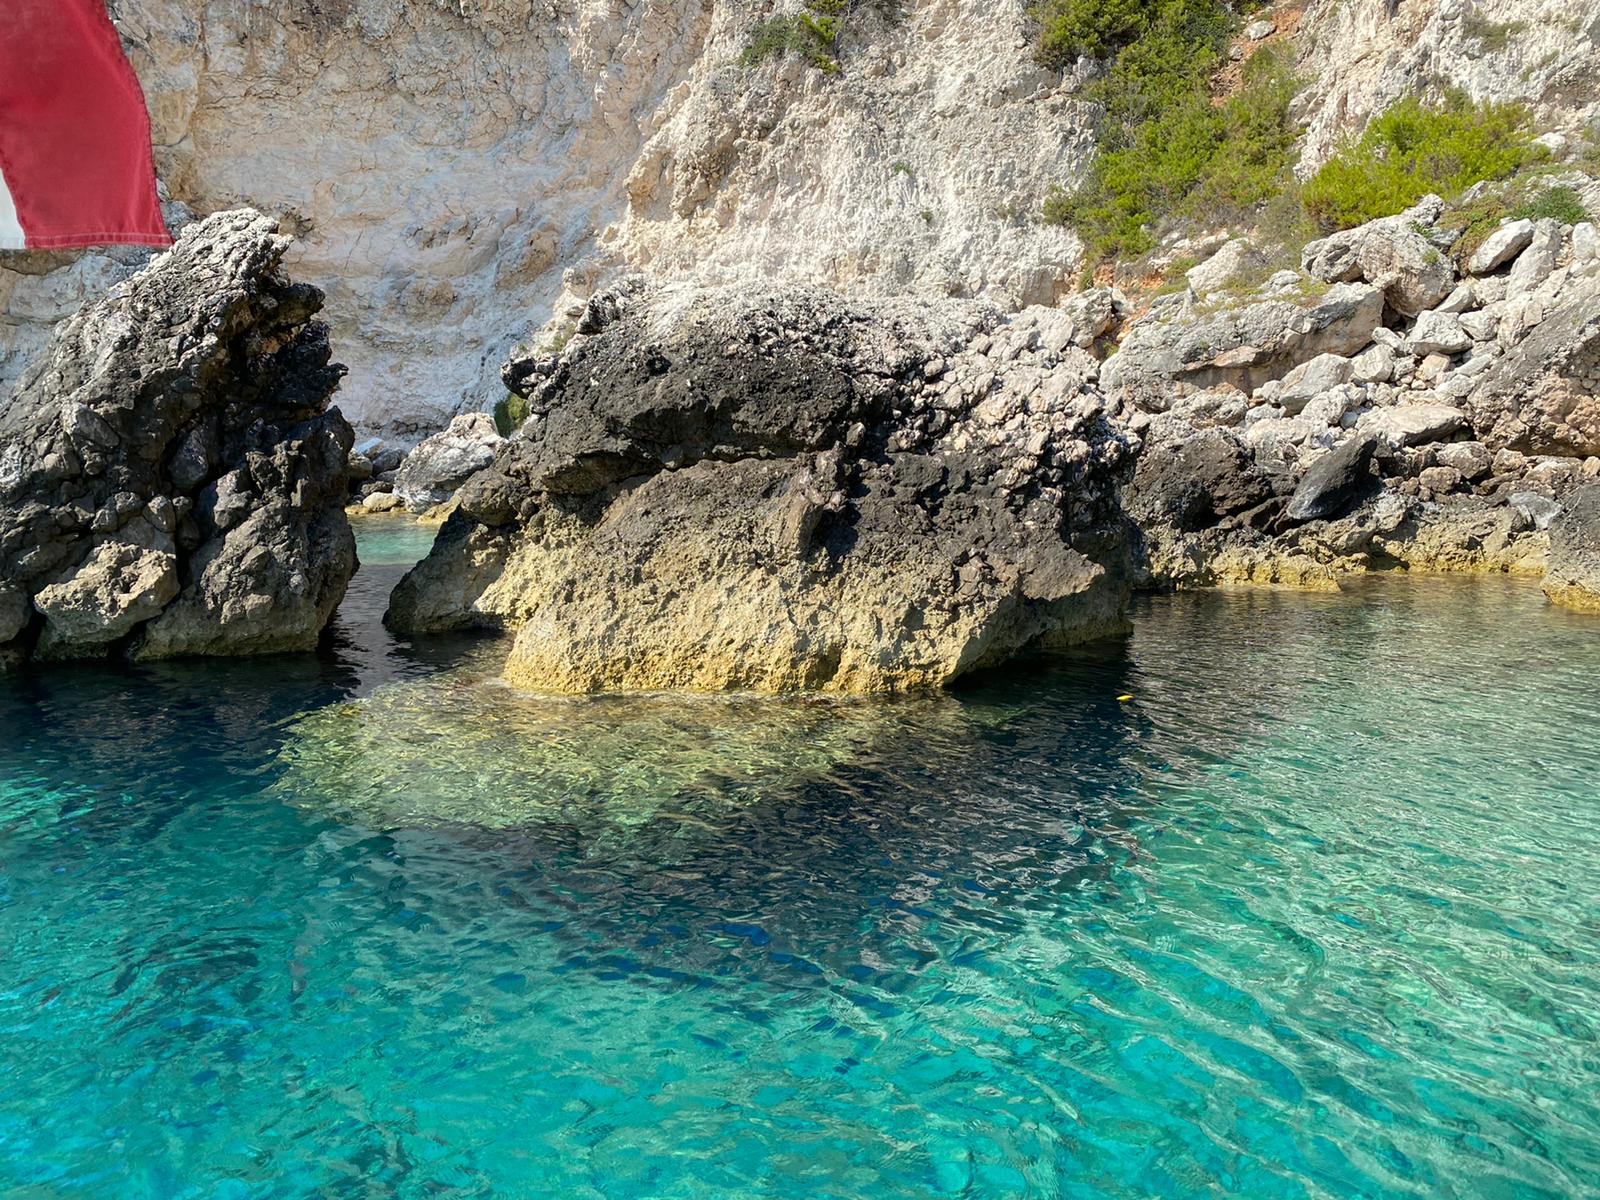 Galleria Bandiera Blu 2020 alle Isole Tremiti  Emiliano: “in Puglia grande risultato, siamo orgogliosi” - Diapositiva 5 di 8